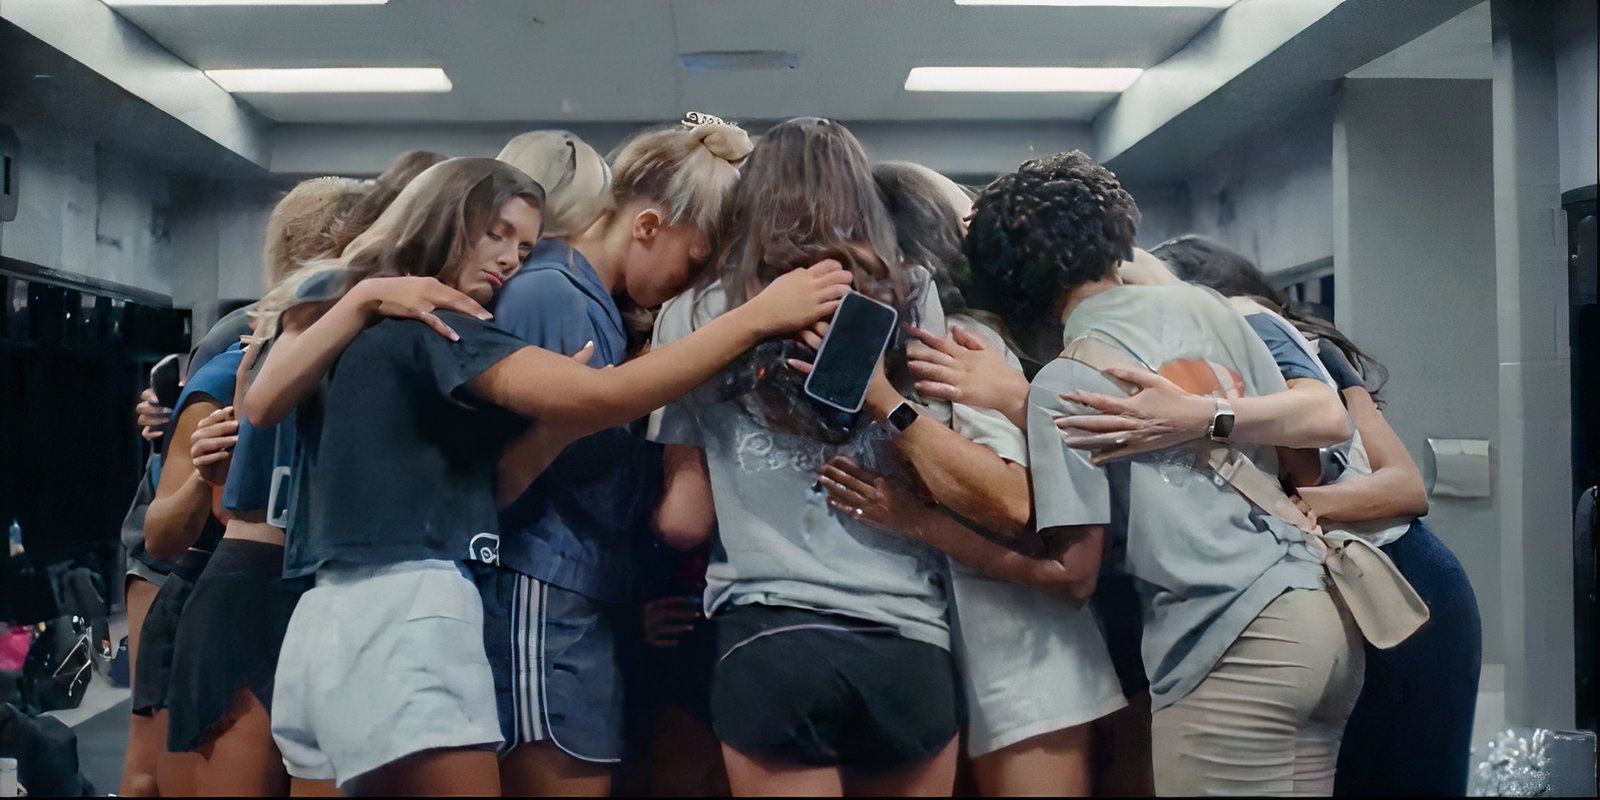 Dallas Cowboys Cheerleaders hugging in a locker room